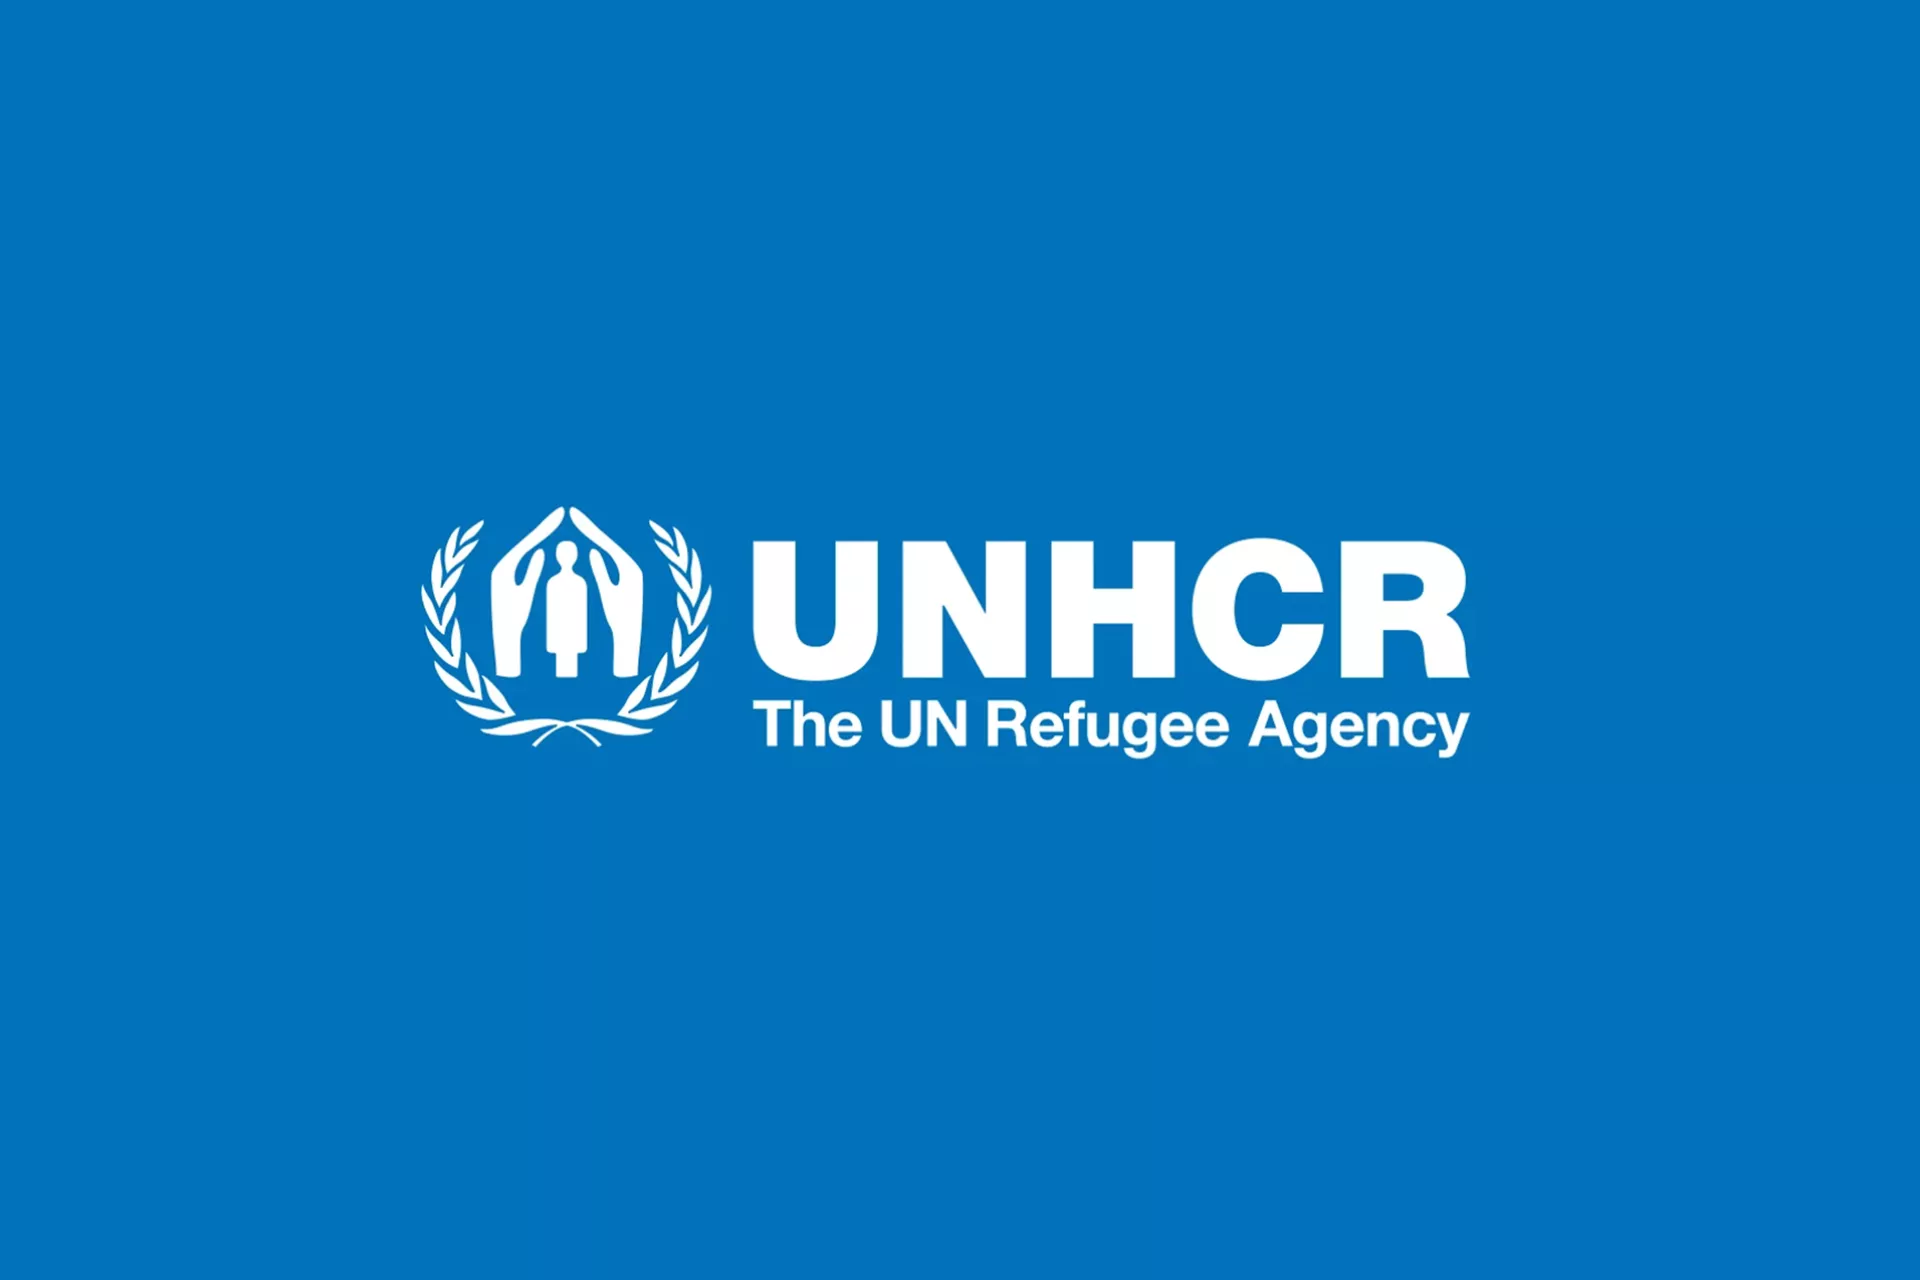 UNHCR LOGO